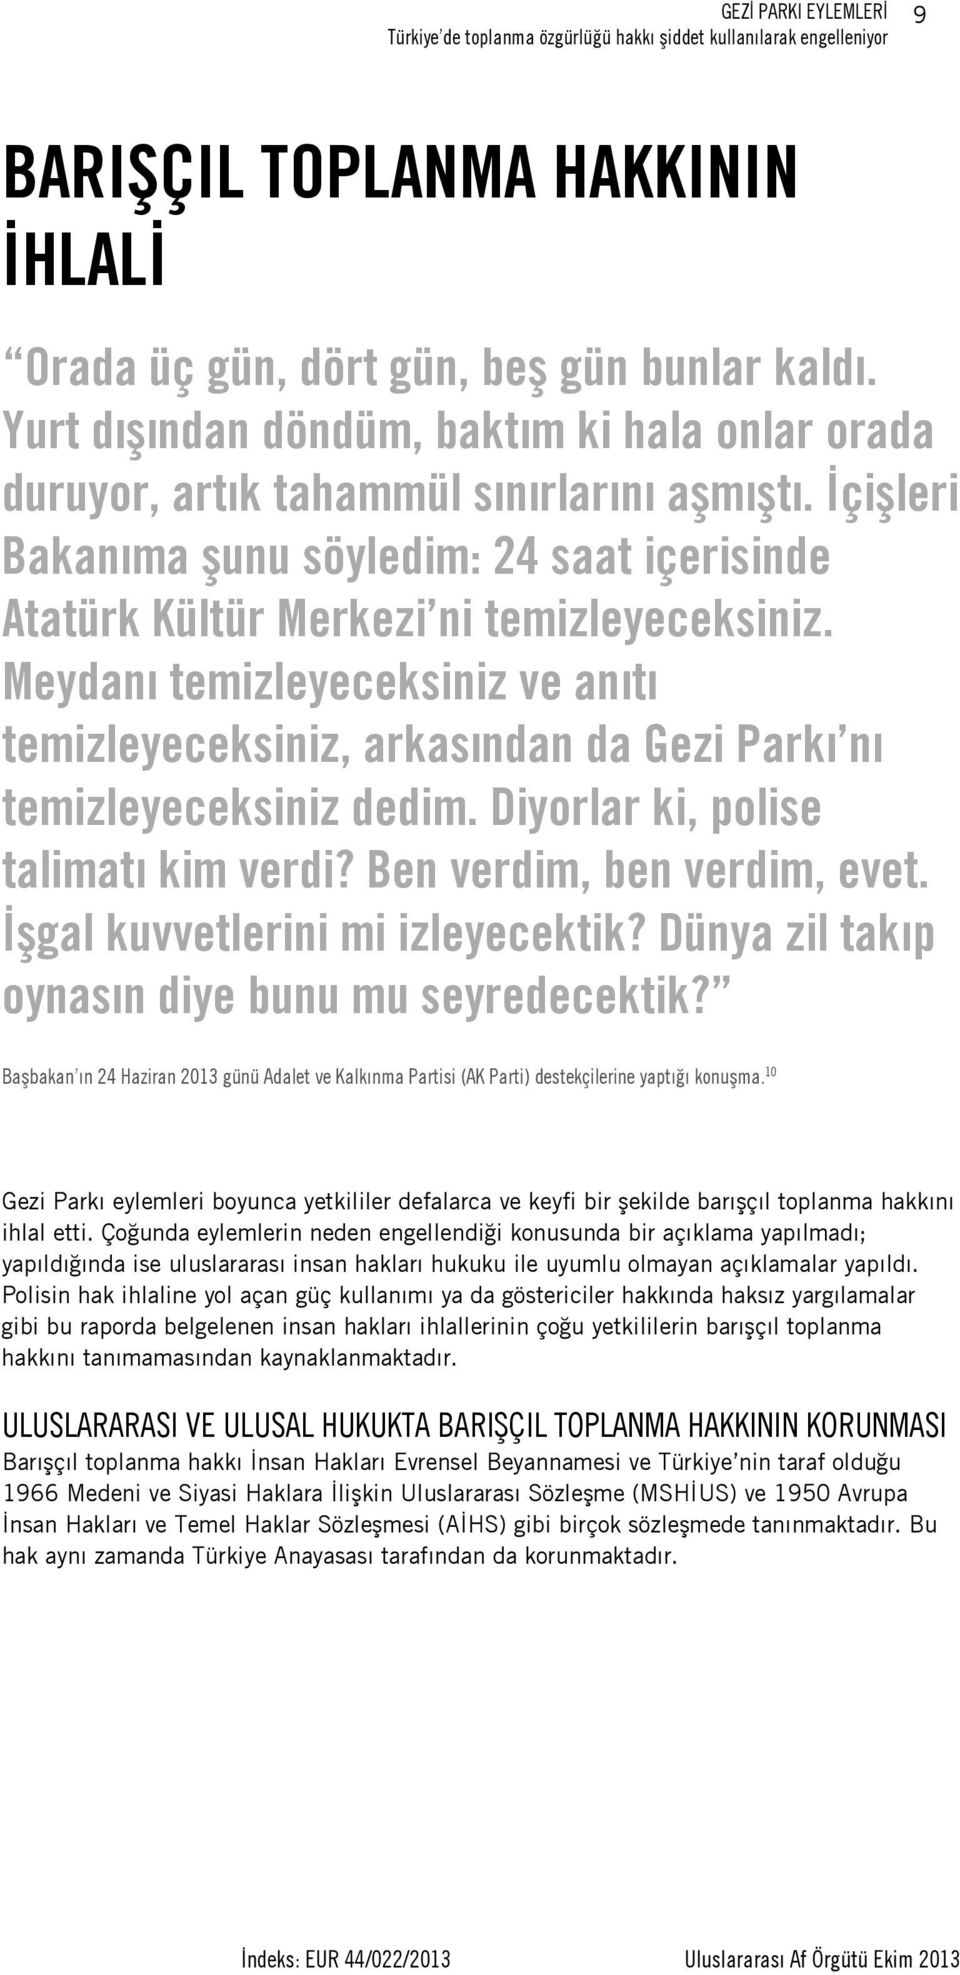 Meydanı temizleyeceksiniz ve anıtı temizleyeceksiniz, arkasından da Gezi Parkı nı temizleyeceksiniz dedim. Diyorlar ki, polise talimatı kim verdi? Ben verdim, ben verdim, evet.